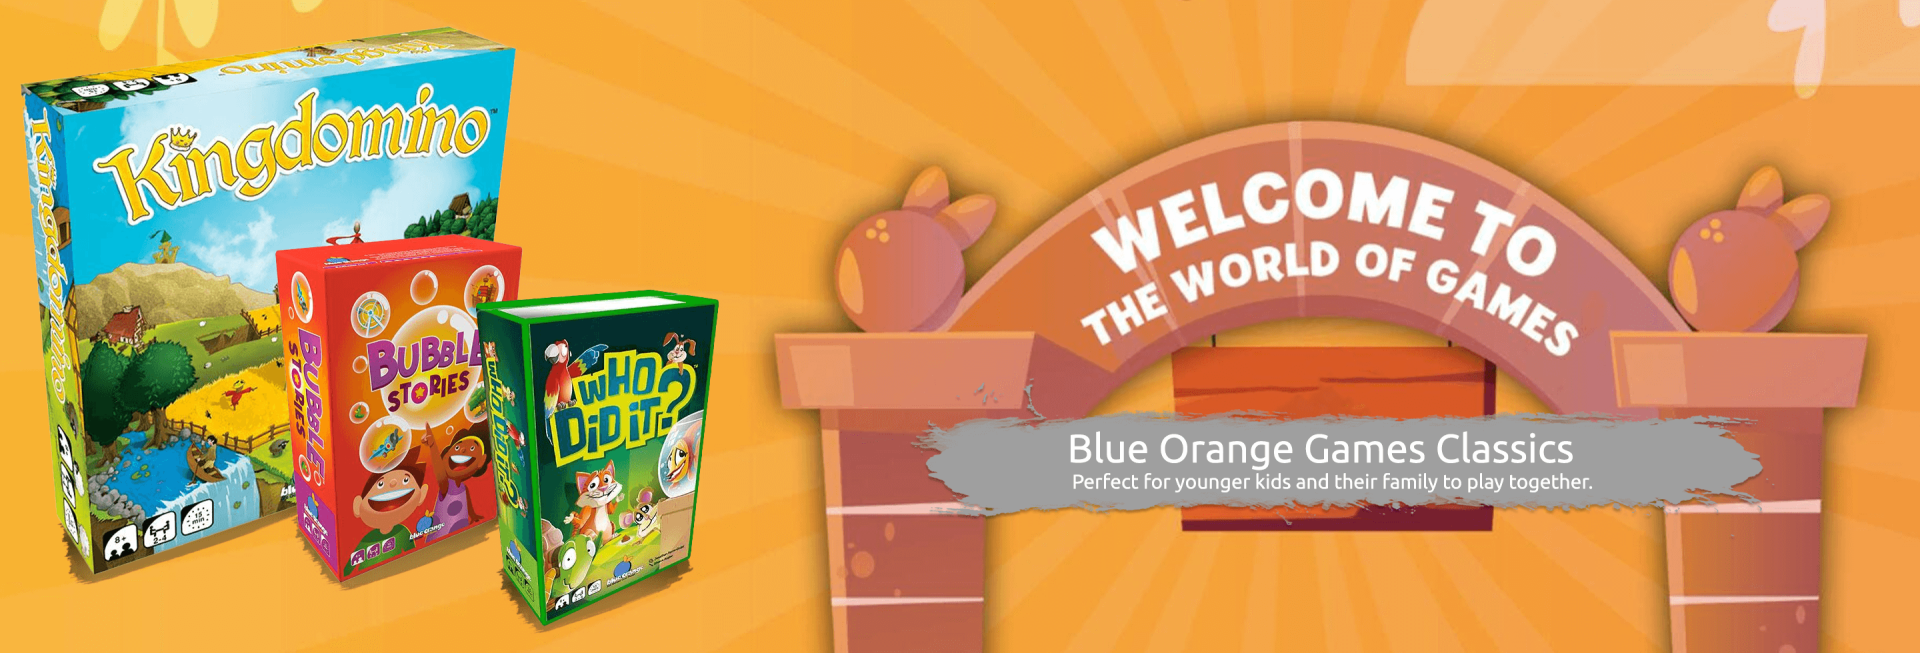 Blue Orange Games for Kids